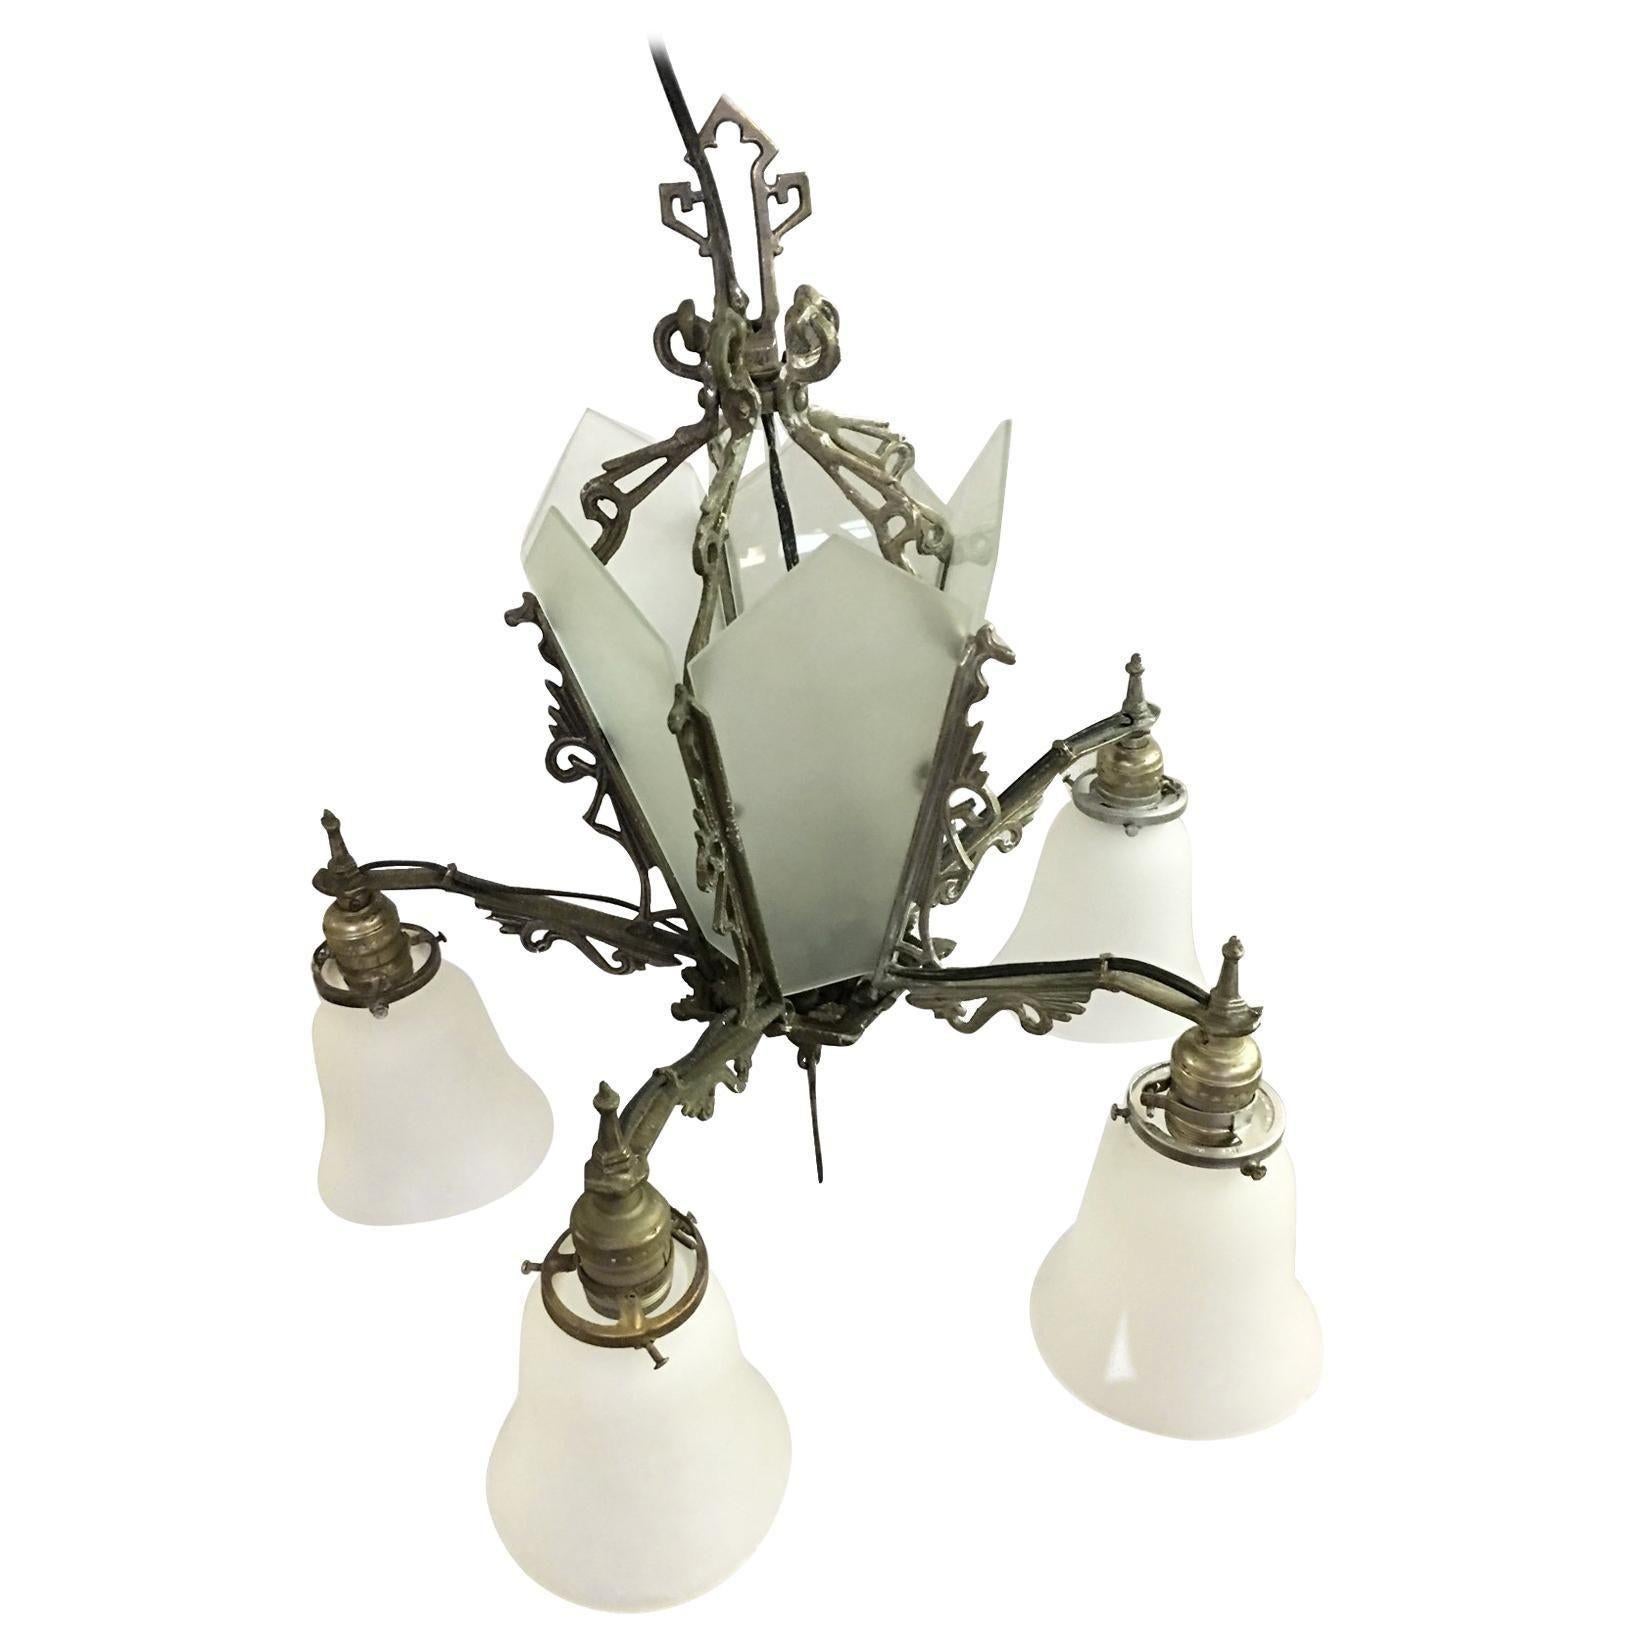 Lustre géométrique Art Déco à cinq branches avec cinq lampes suspendues avec des abat-jours en forme de cloche et un centre en verre opale à lamelles éclairantes. La pièce est ornée de détails en forme de volutes, tandis que la base du lustre est